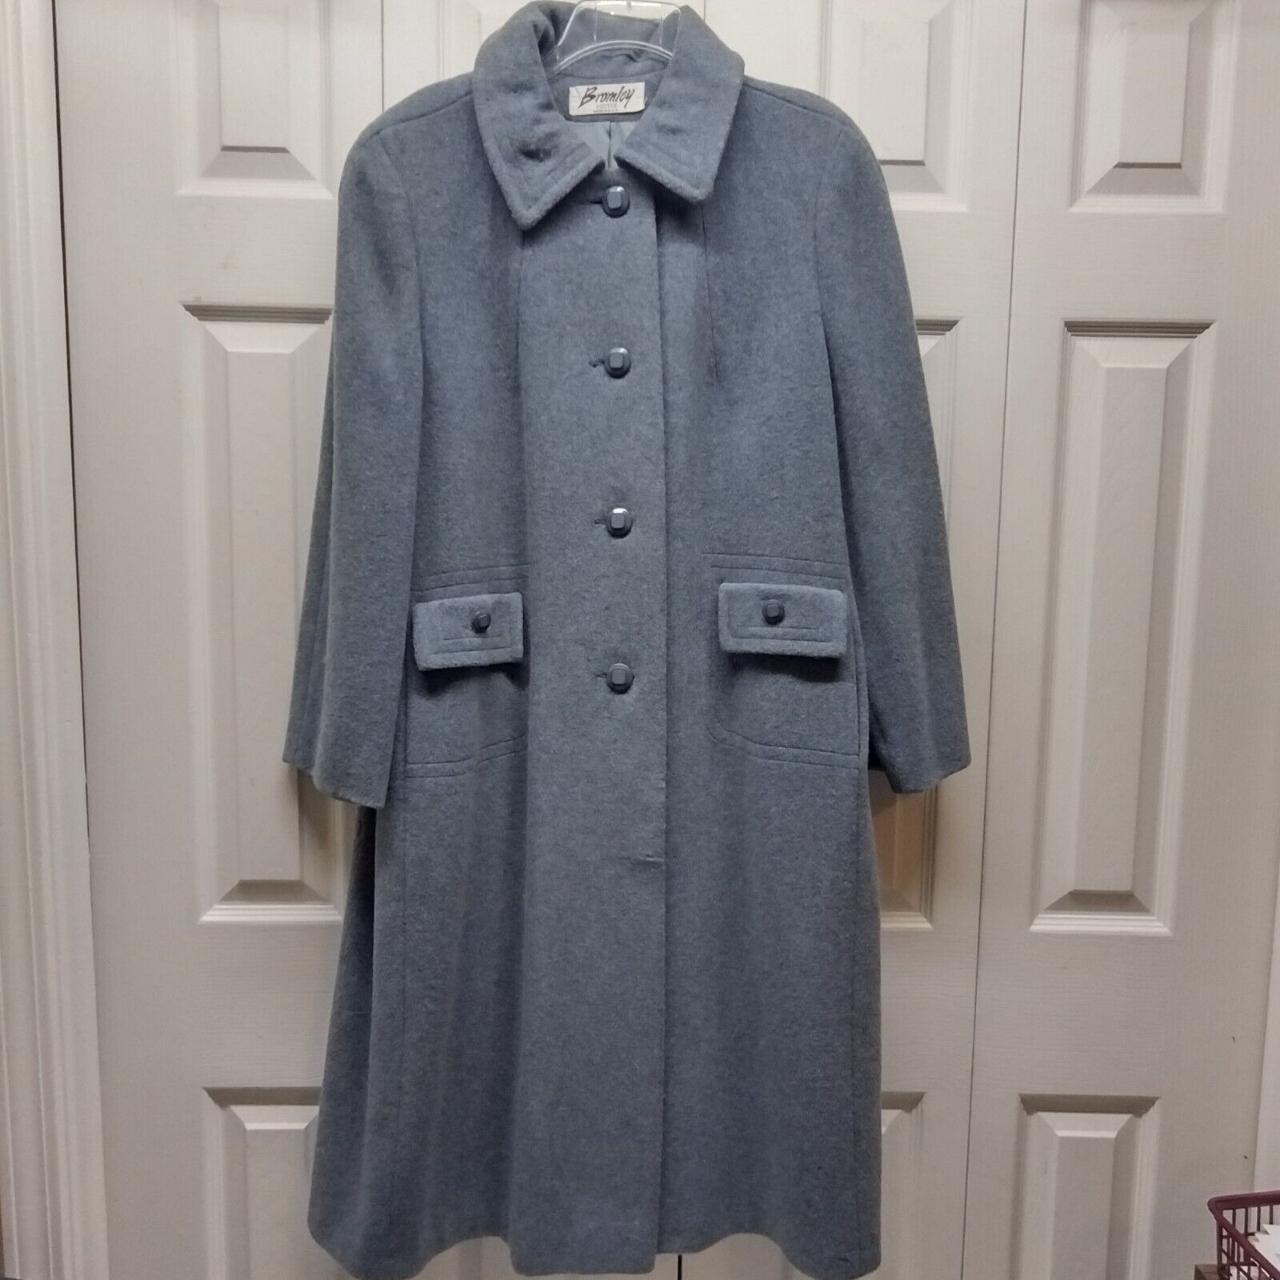 Bromley Petite Women’s Wool Long Coat Blue Union... - Depop